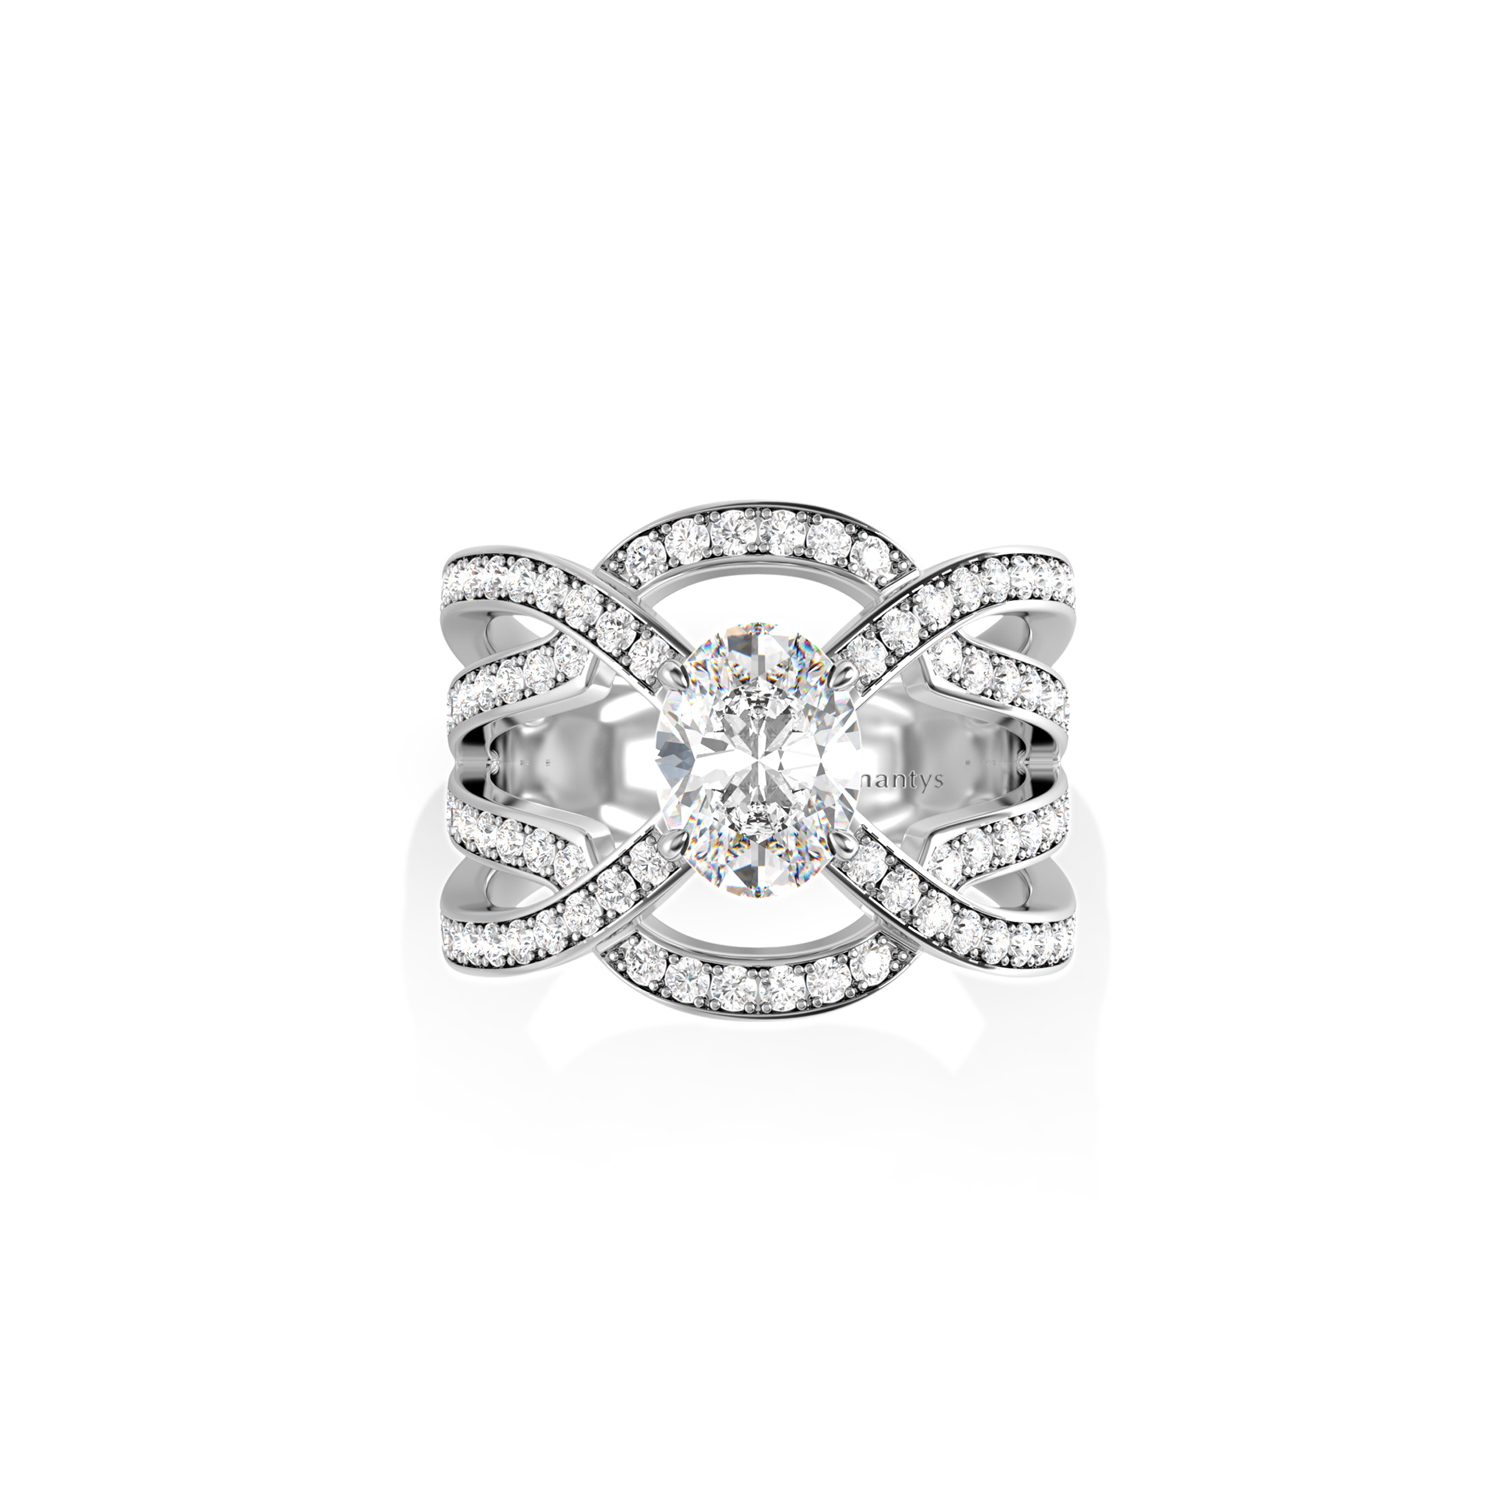 Personnalisez votre bague diamant à Paris 75001 - 5 rue de l'Echelle